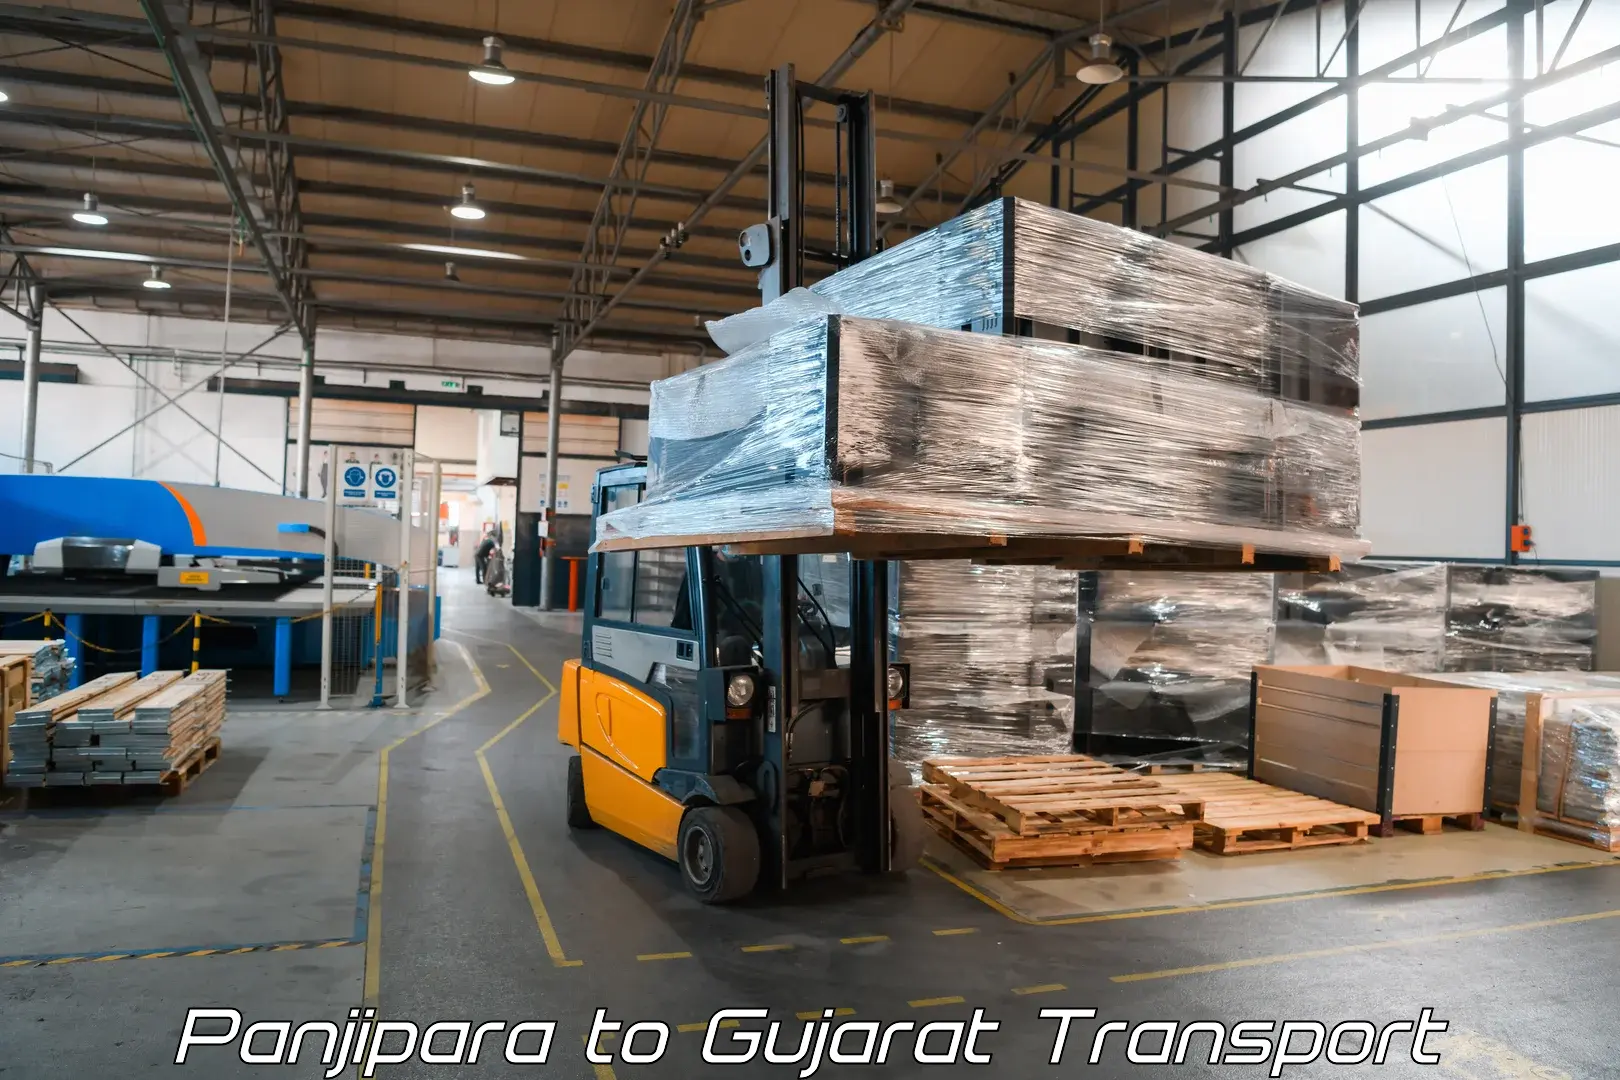 Furniture transport service Panjipara to Madhavpur